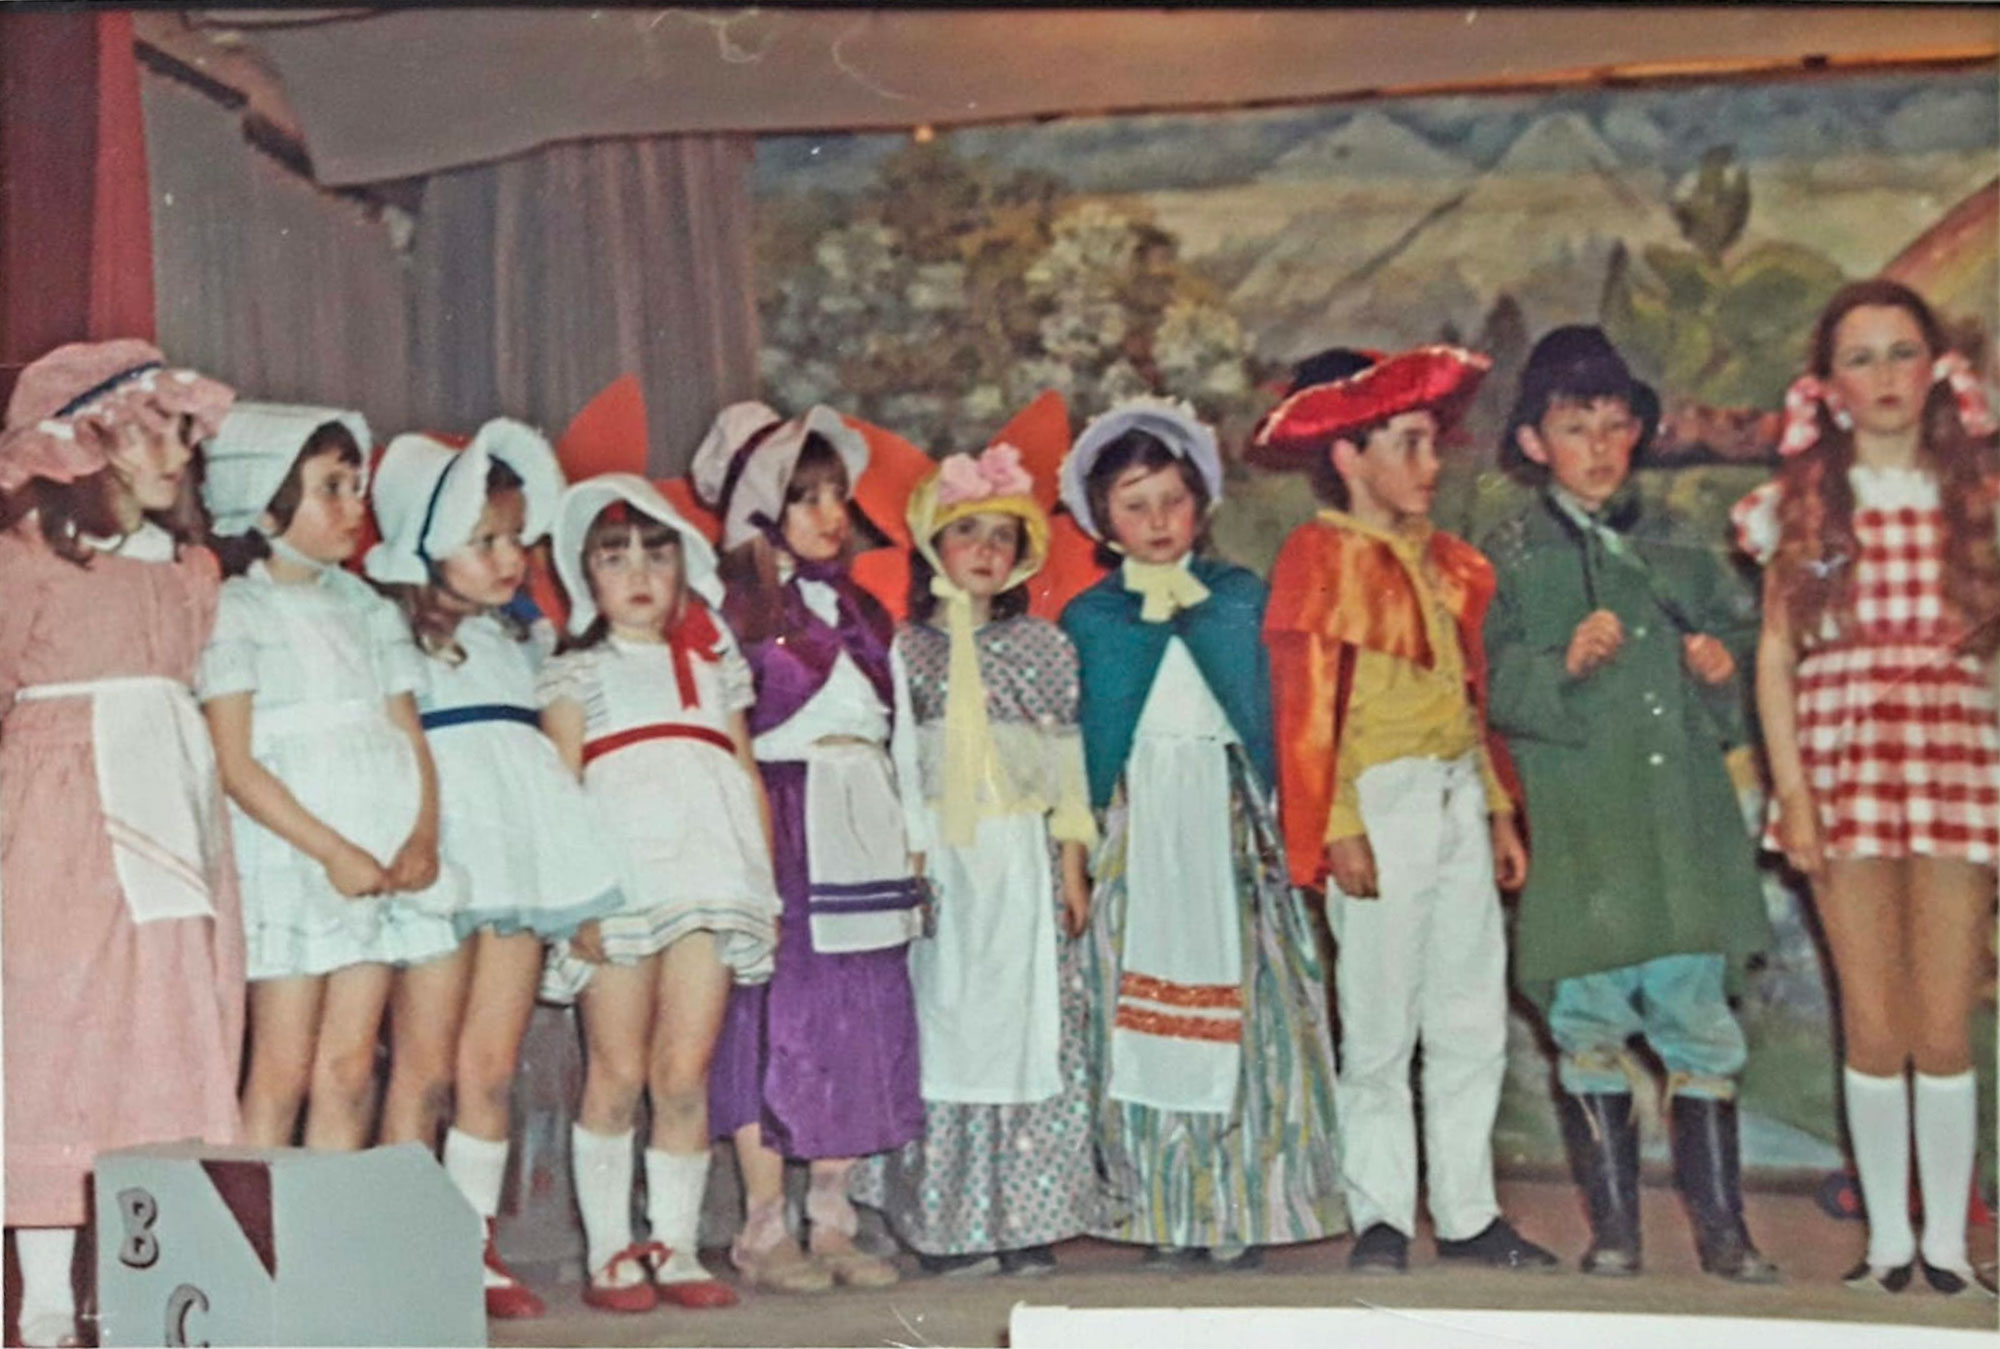 Bishopsteignton Children's Theatre cast of Wizard of Oz, 1972/3